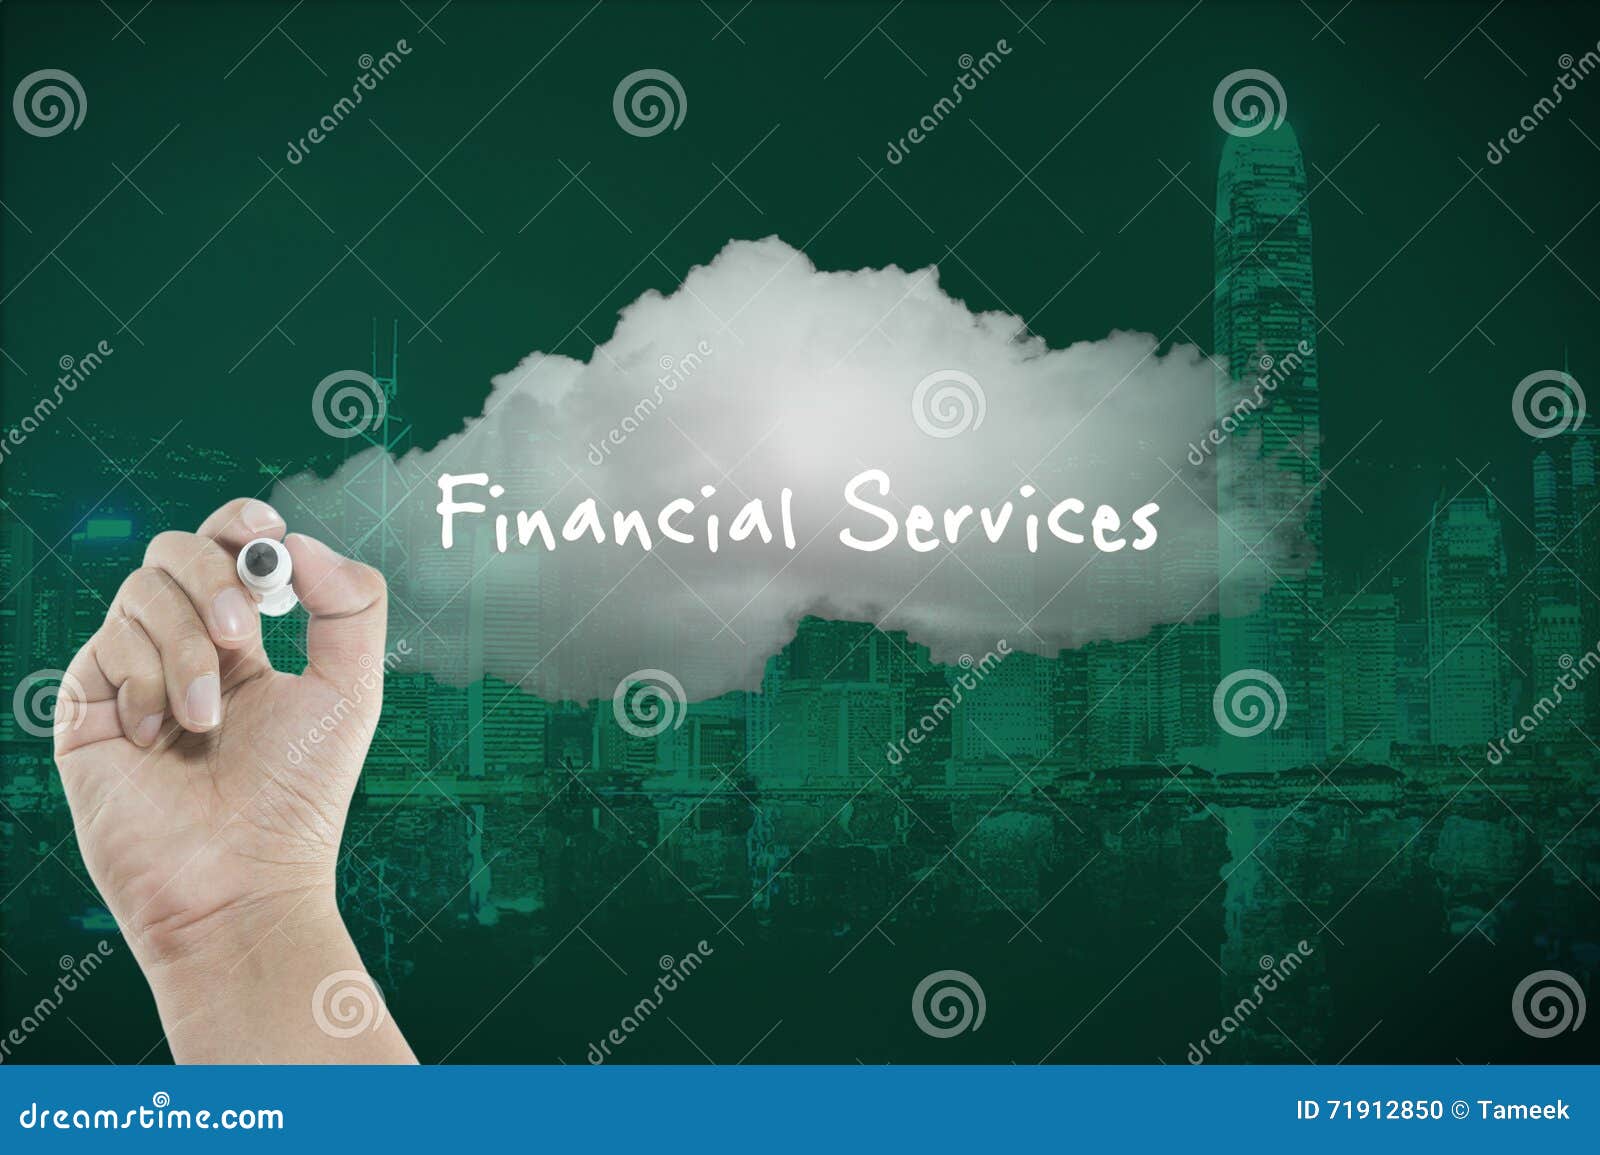 Servicios financieros en la nube con horizonte de la ciudad